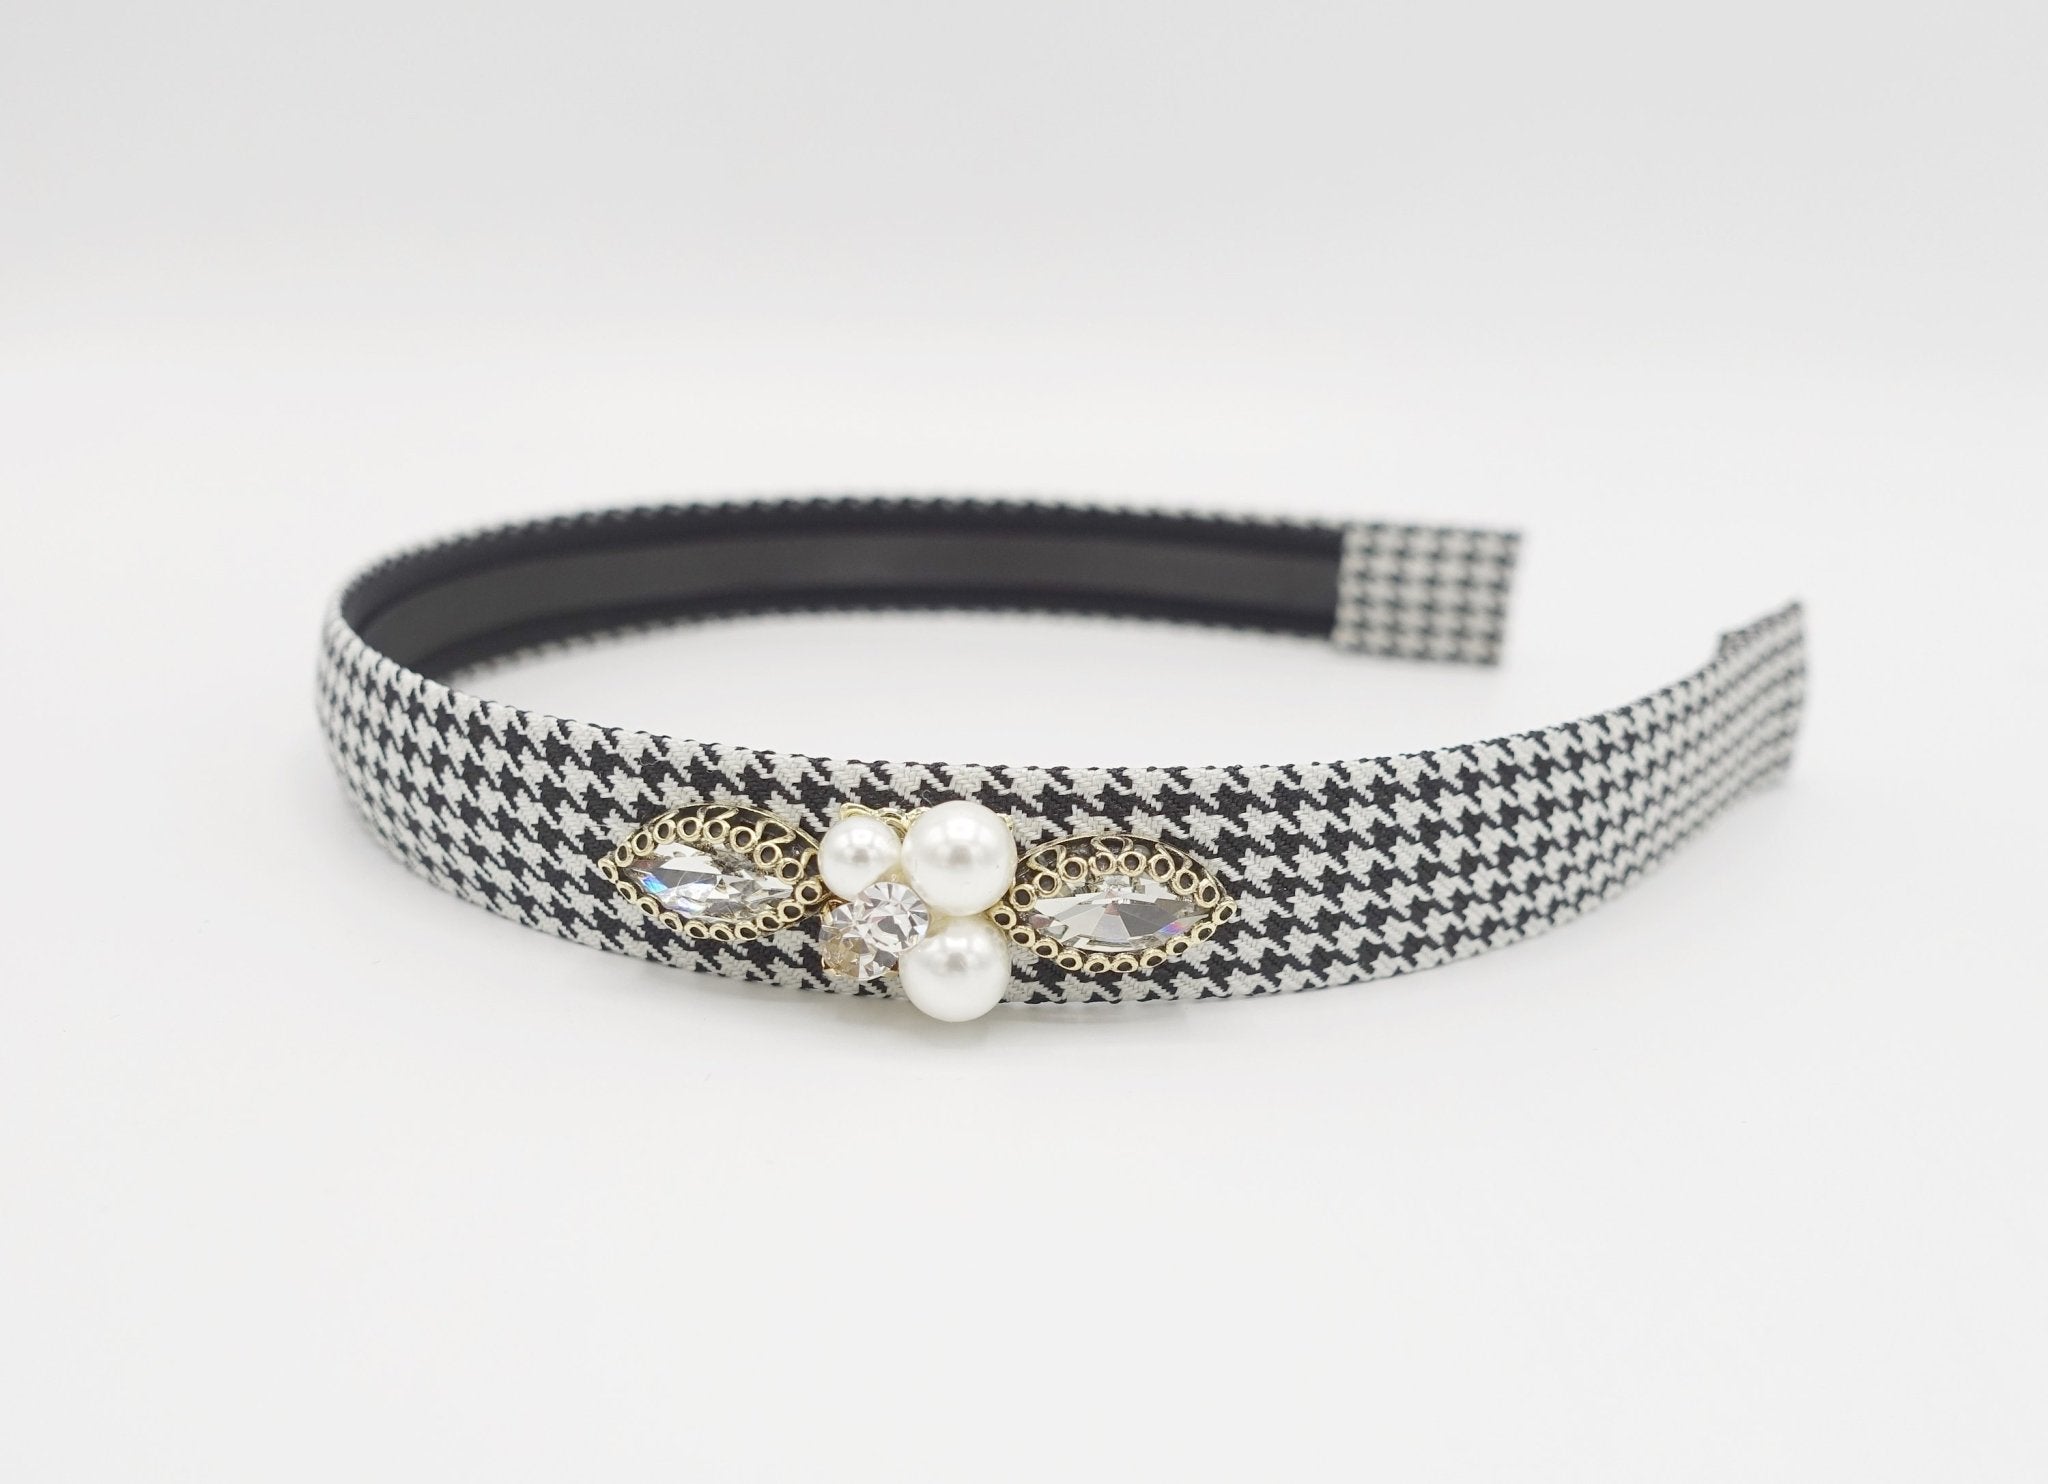 VeryShine Headband houndstooth headband jeweled embellished hairband for women